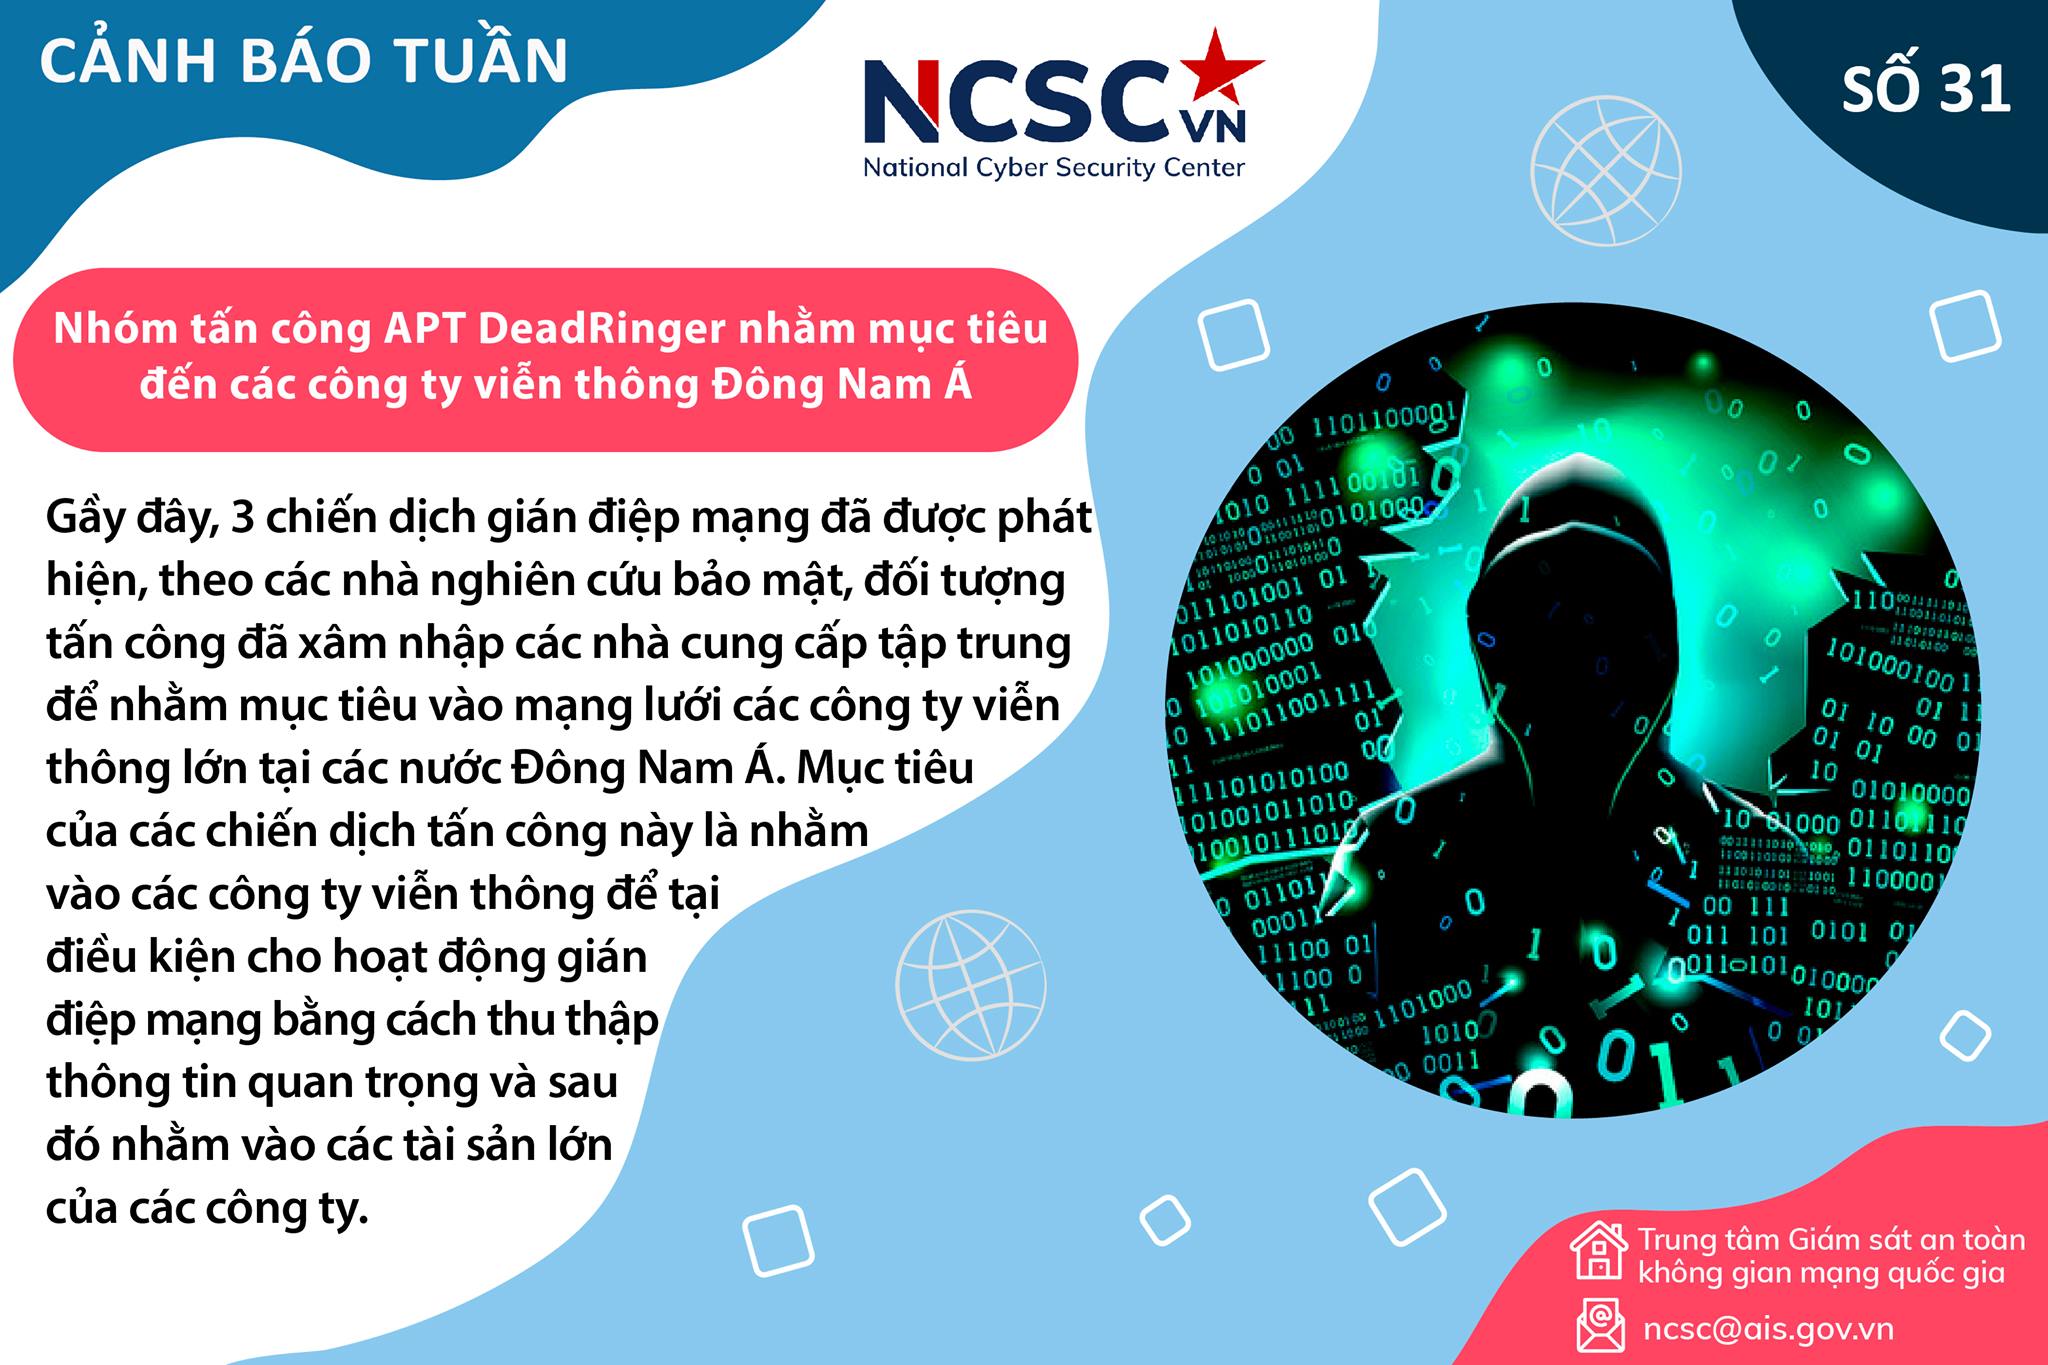 Cảnh báo tình hình giám sát an toàn, an ninh mạng Việt Nam Tuần 31 (02/08/2021 – 08/08/2021)